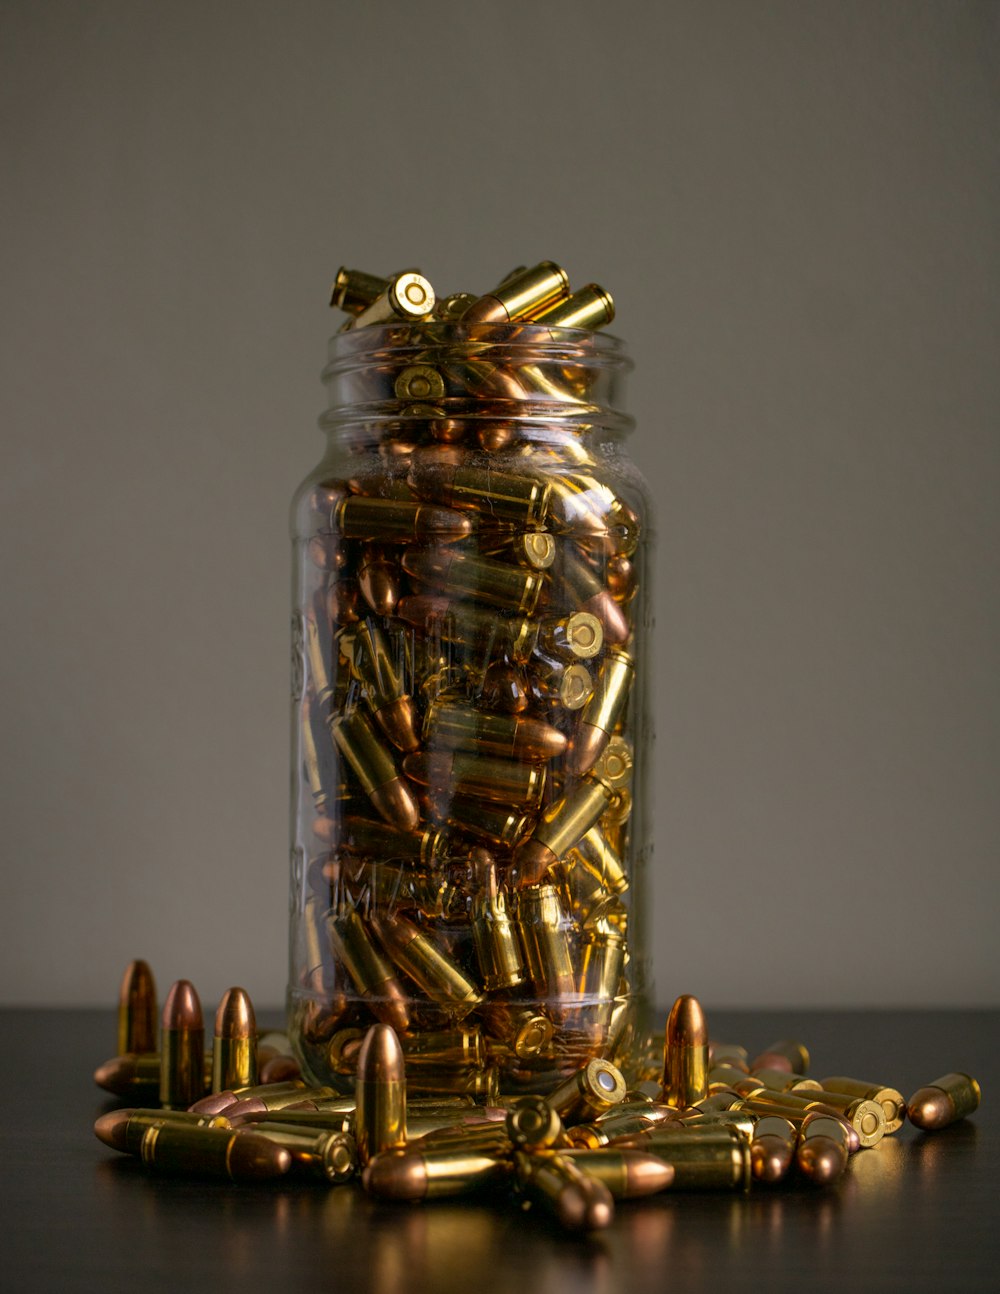 透明なガラス瓶に入った金貨と銀貨